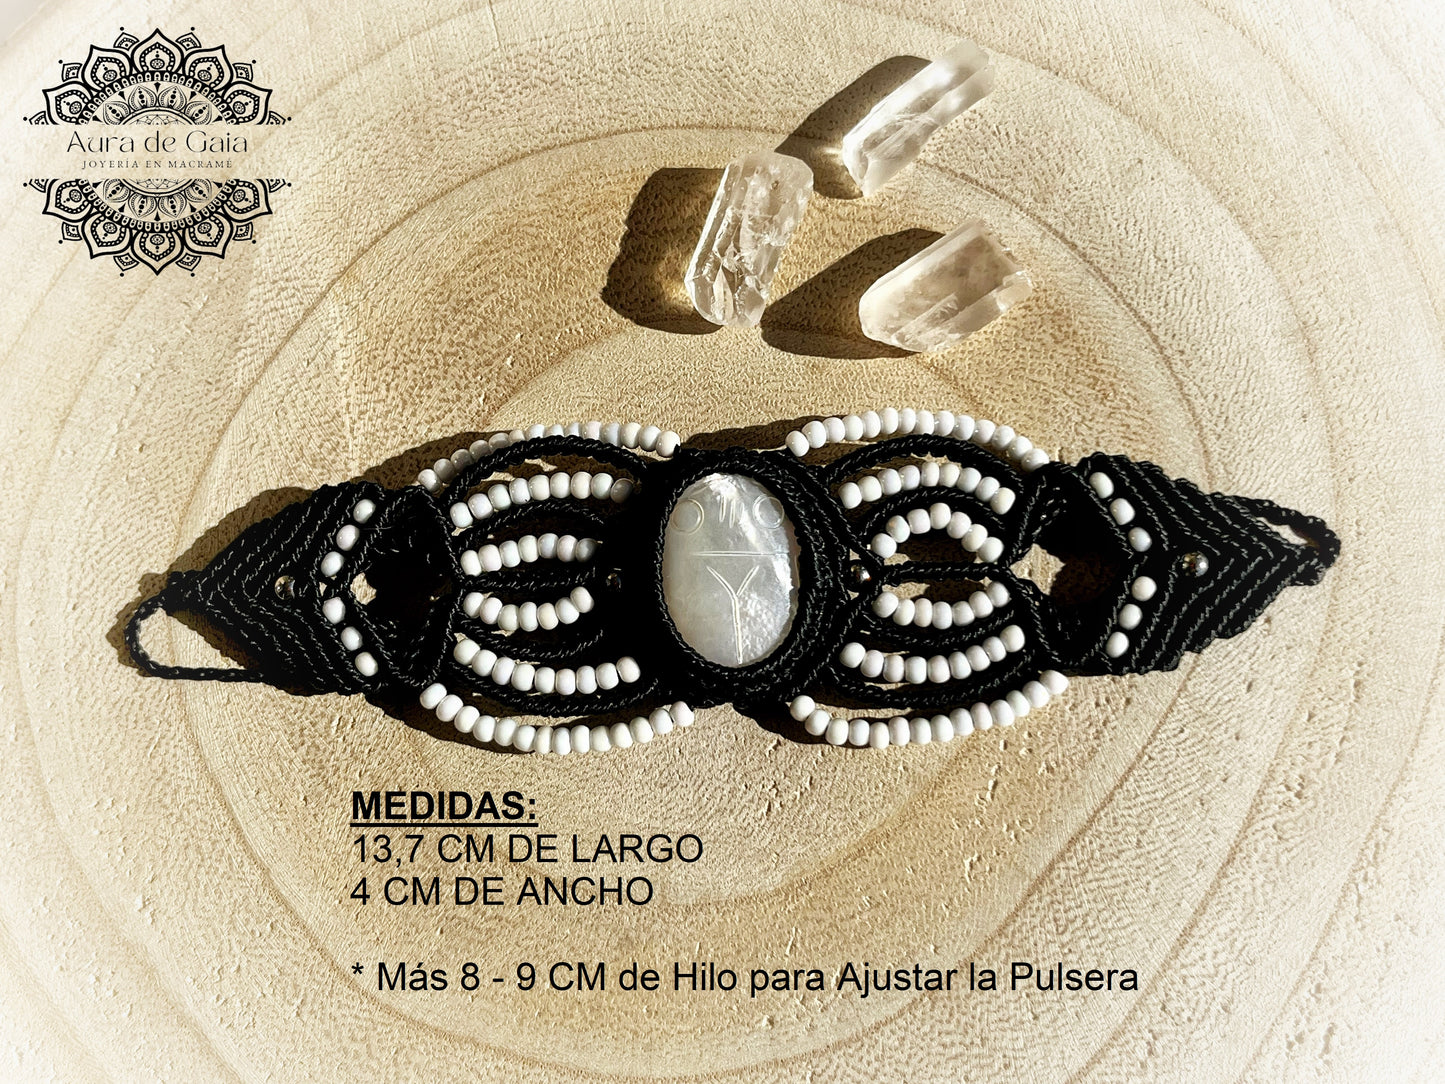 Pulsera de macrame con Amuleto Escarabajo en Madre Perla - Macrame Bracelet with Beetle Charm in Mother of Pearl